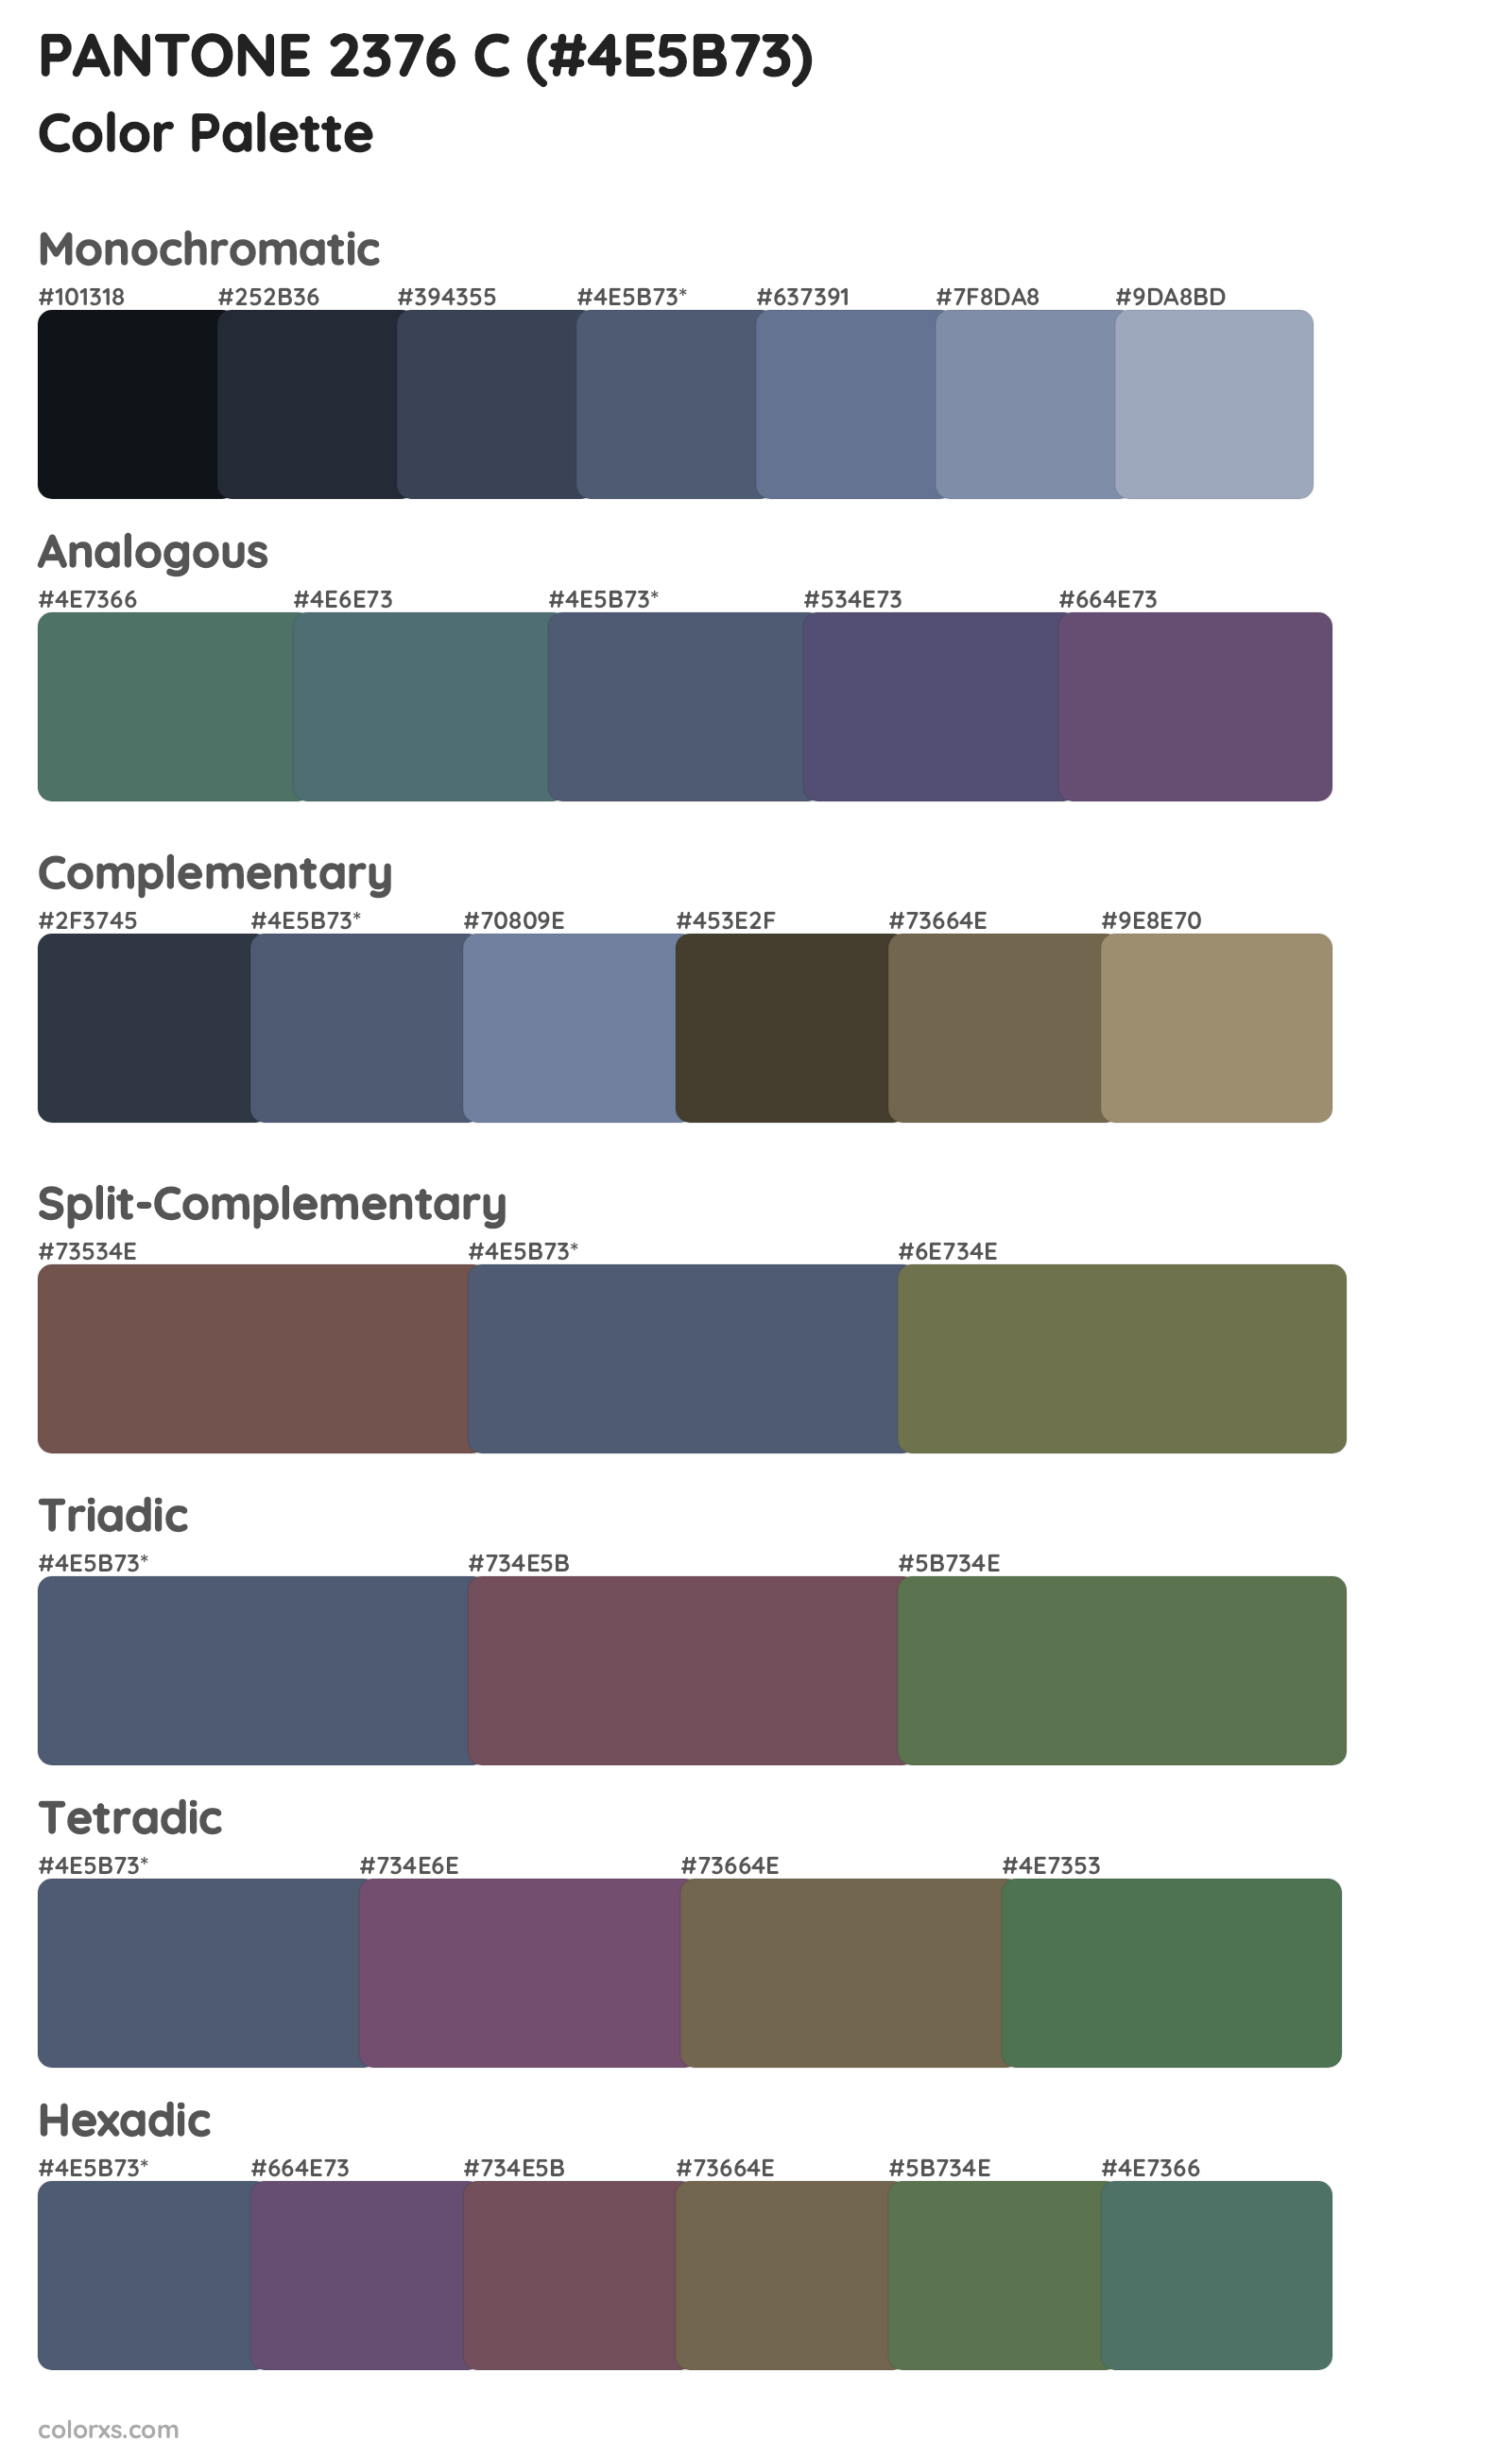 PANTONE 2376 C Color Scheme Palettes